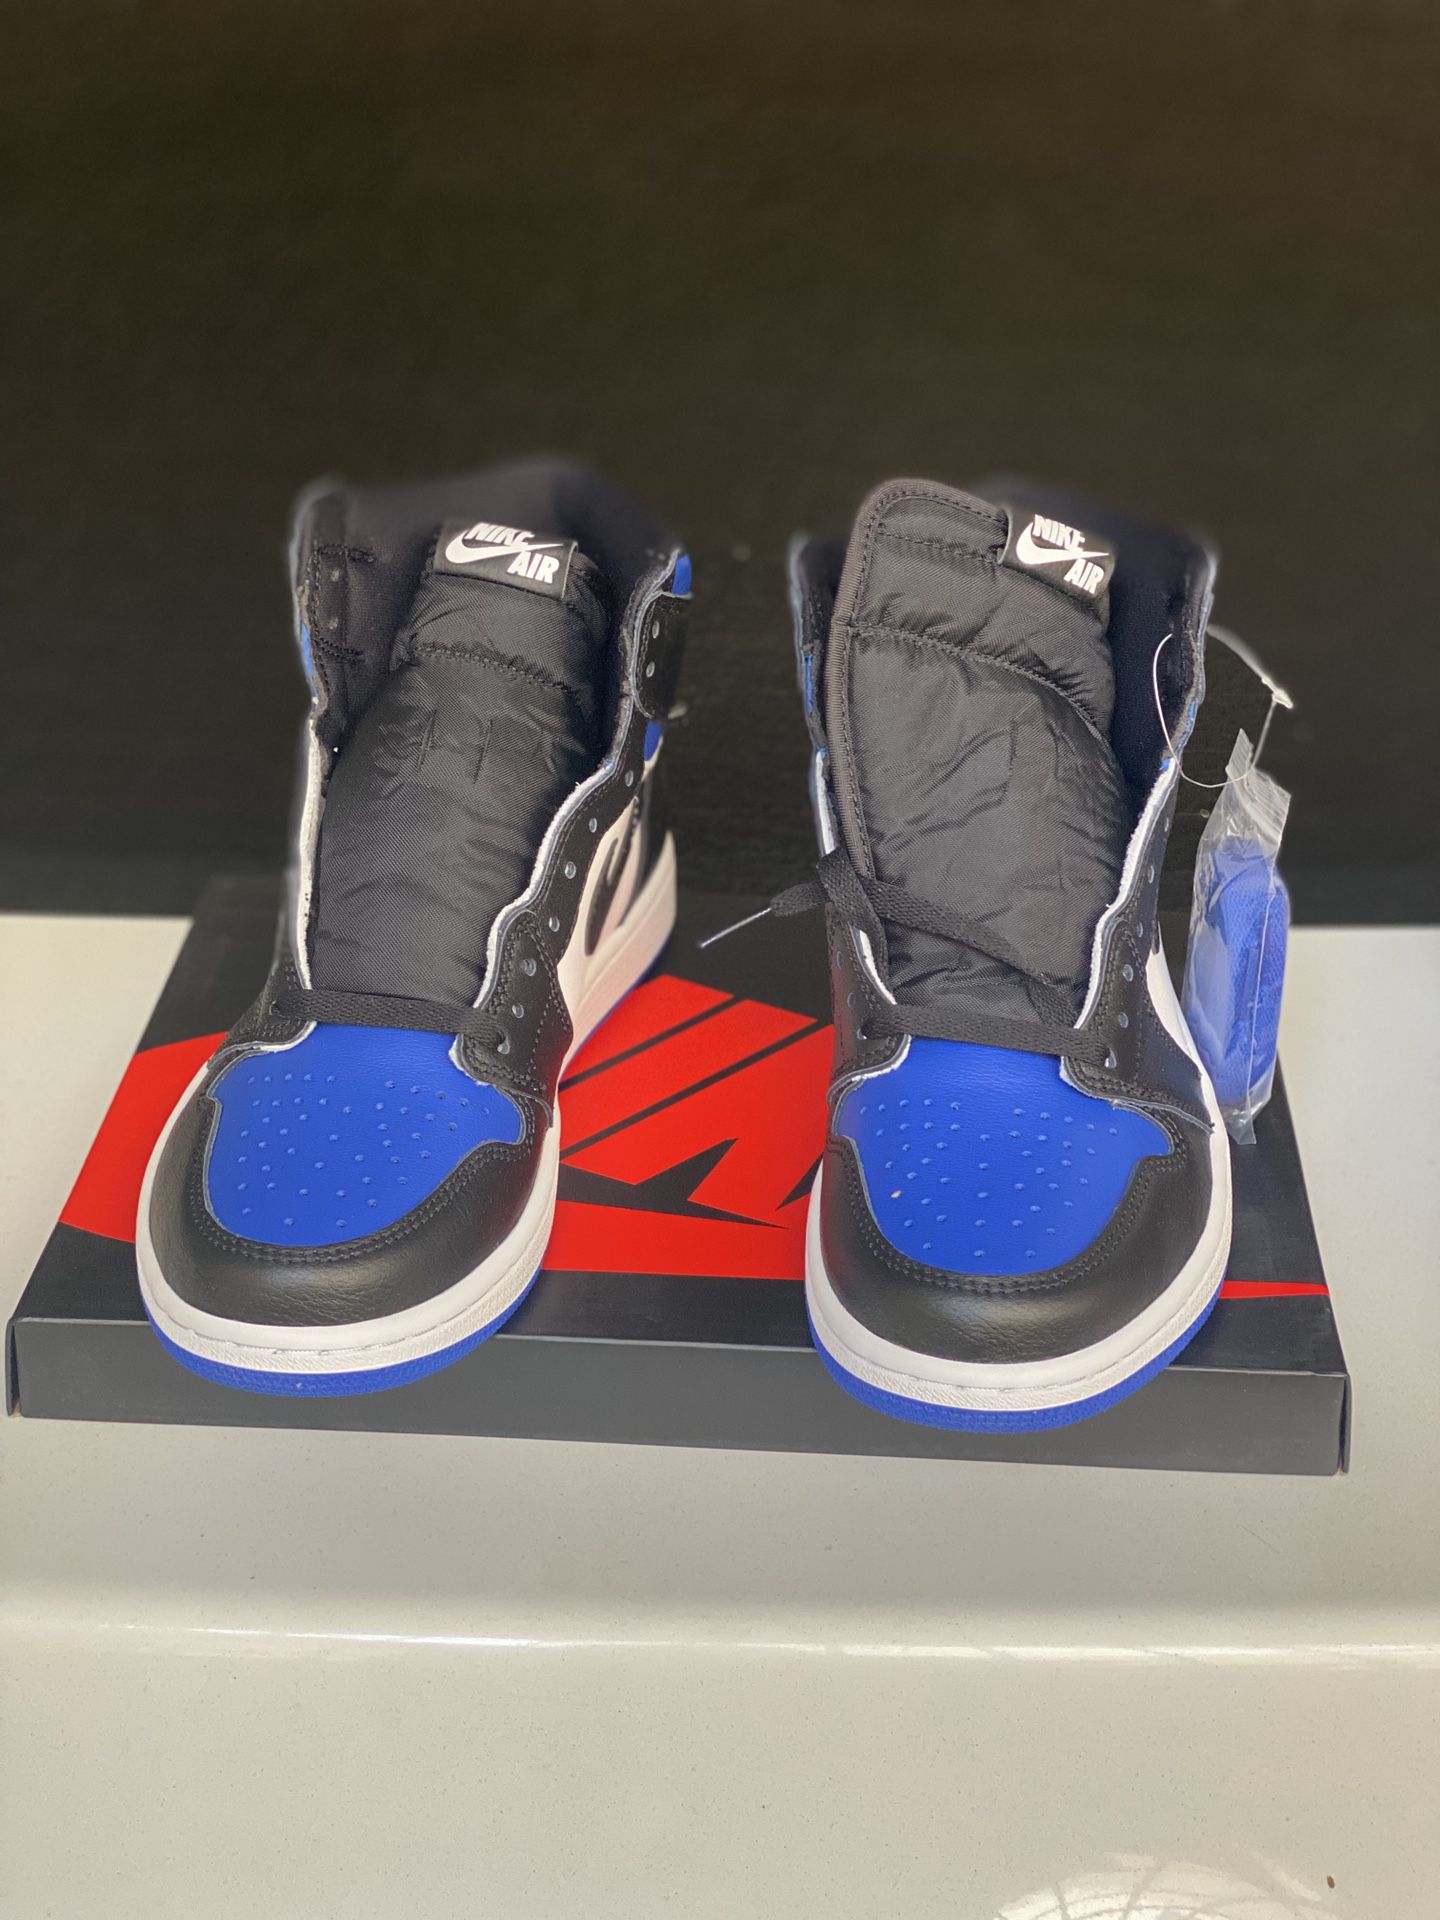 Jordan 1 blue toe